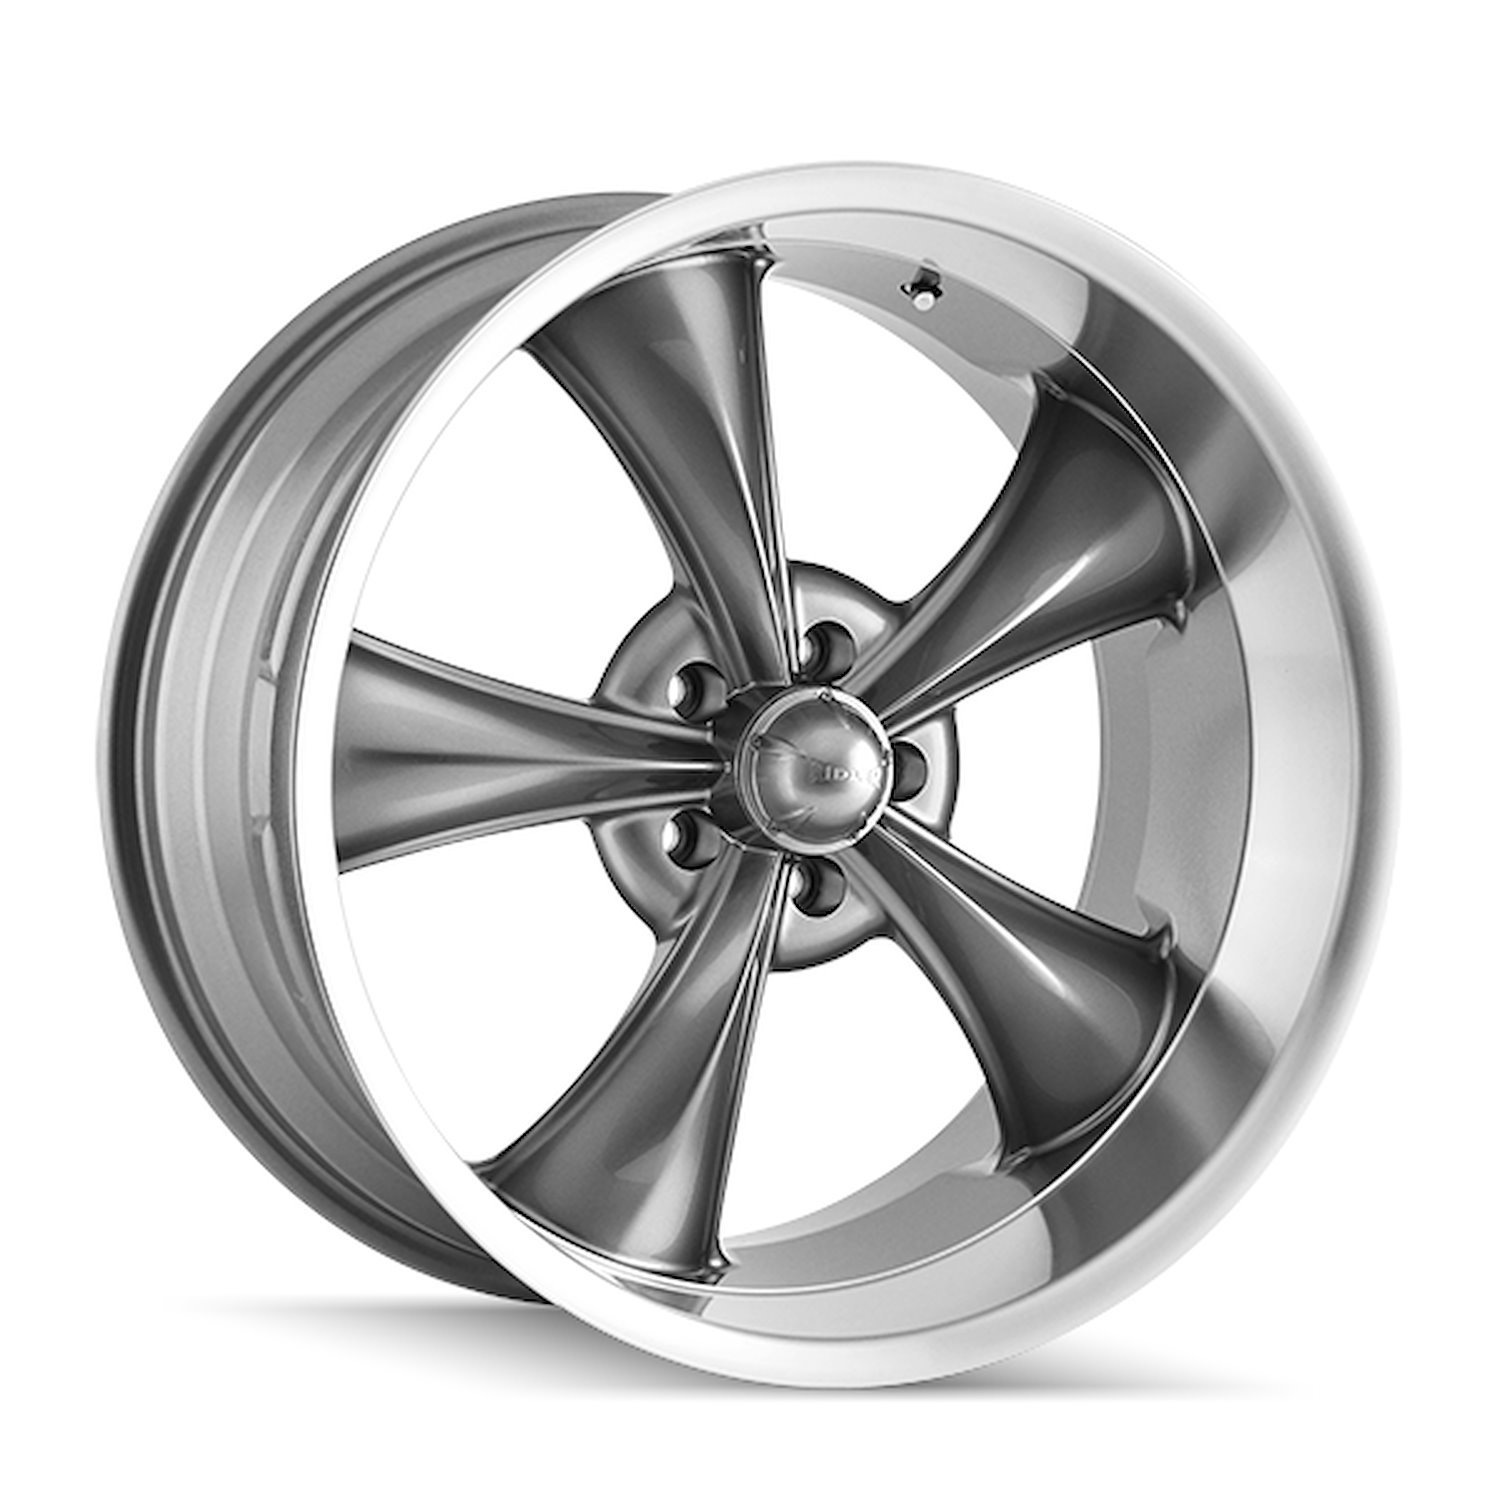 695-7765G 695-Series Wheel [Size: 17" x 7"] Gloss Grey Machined Finish